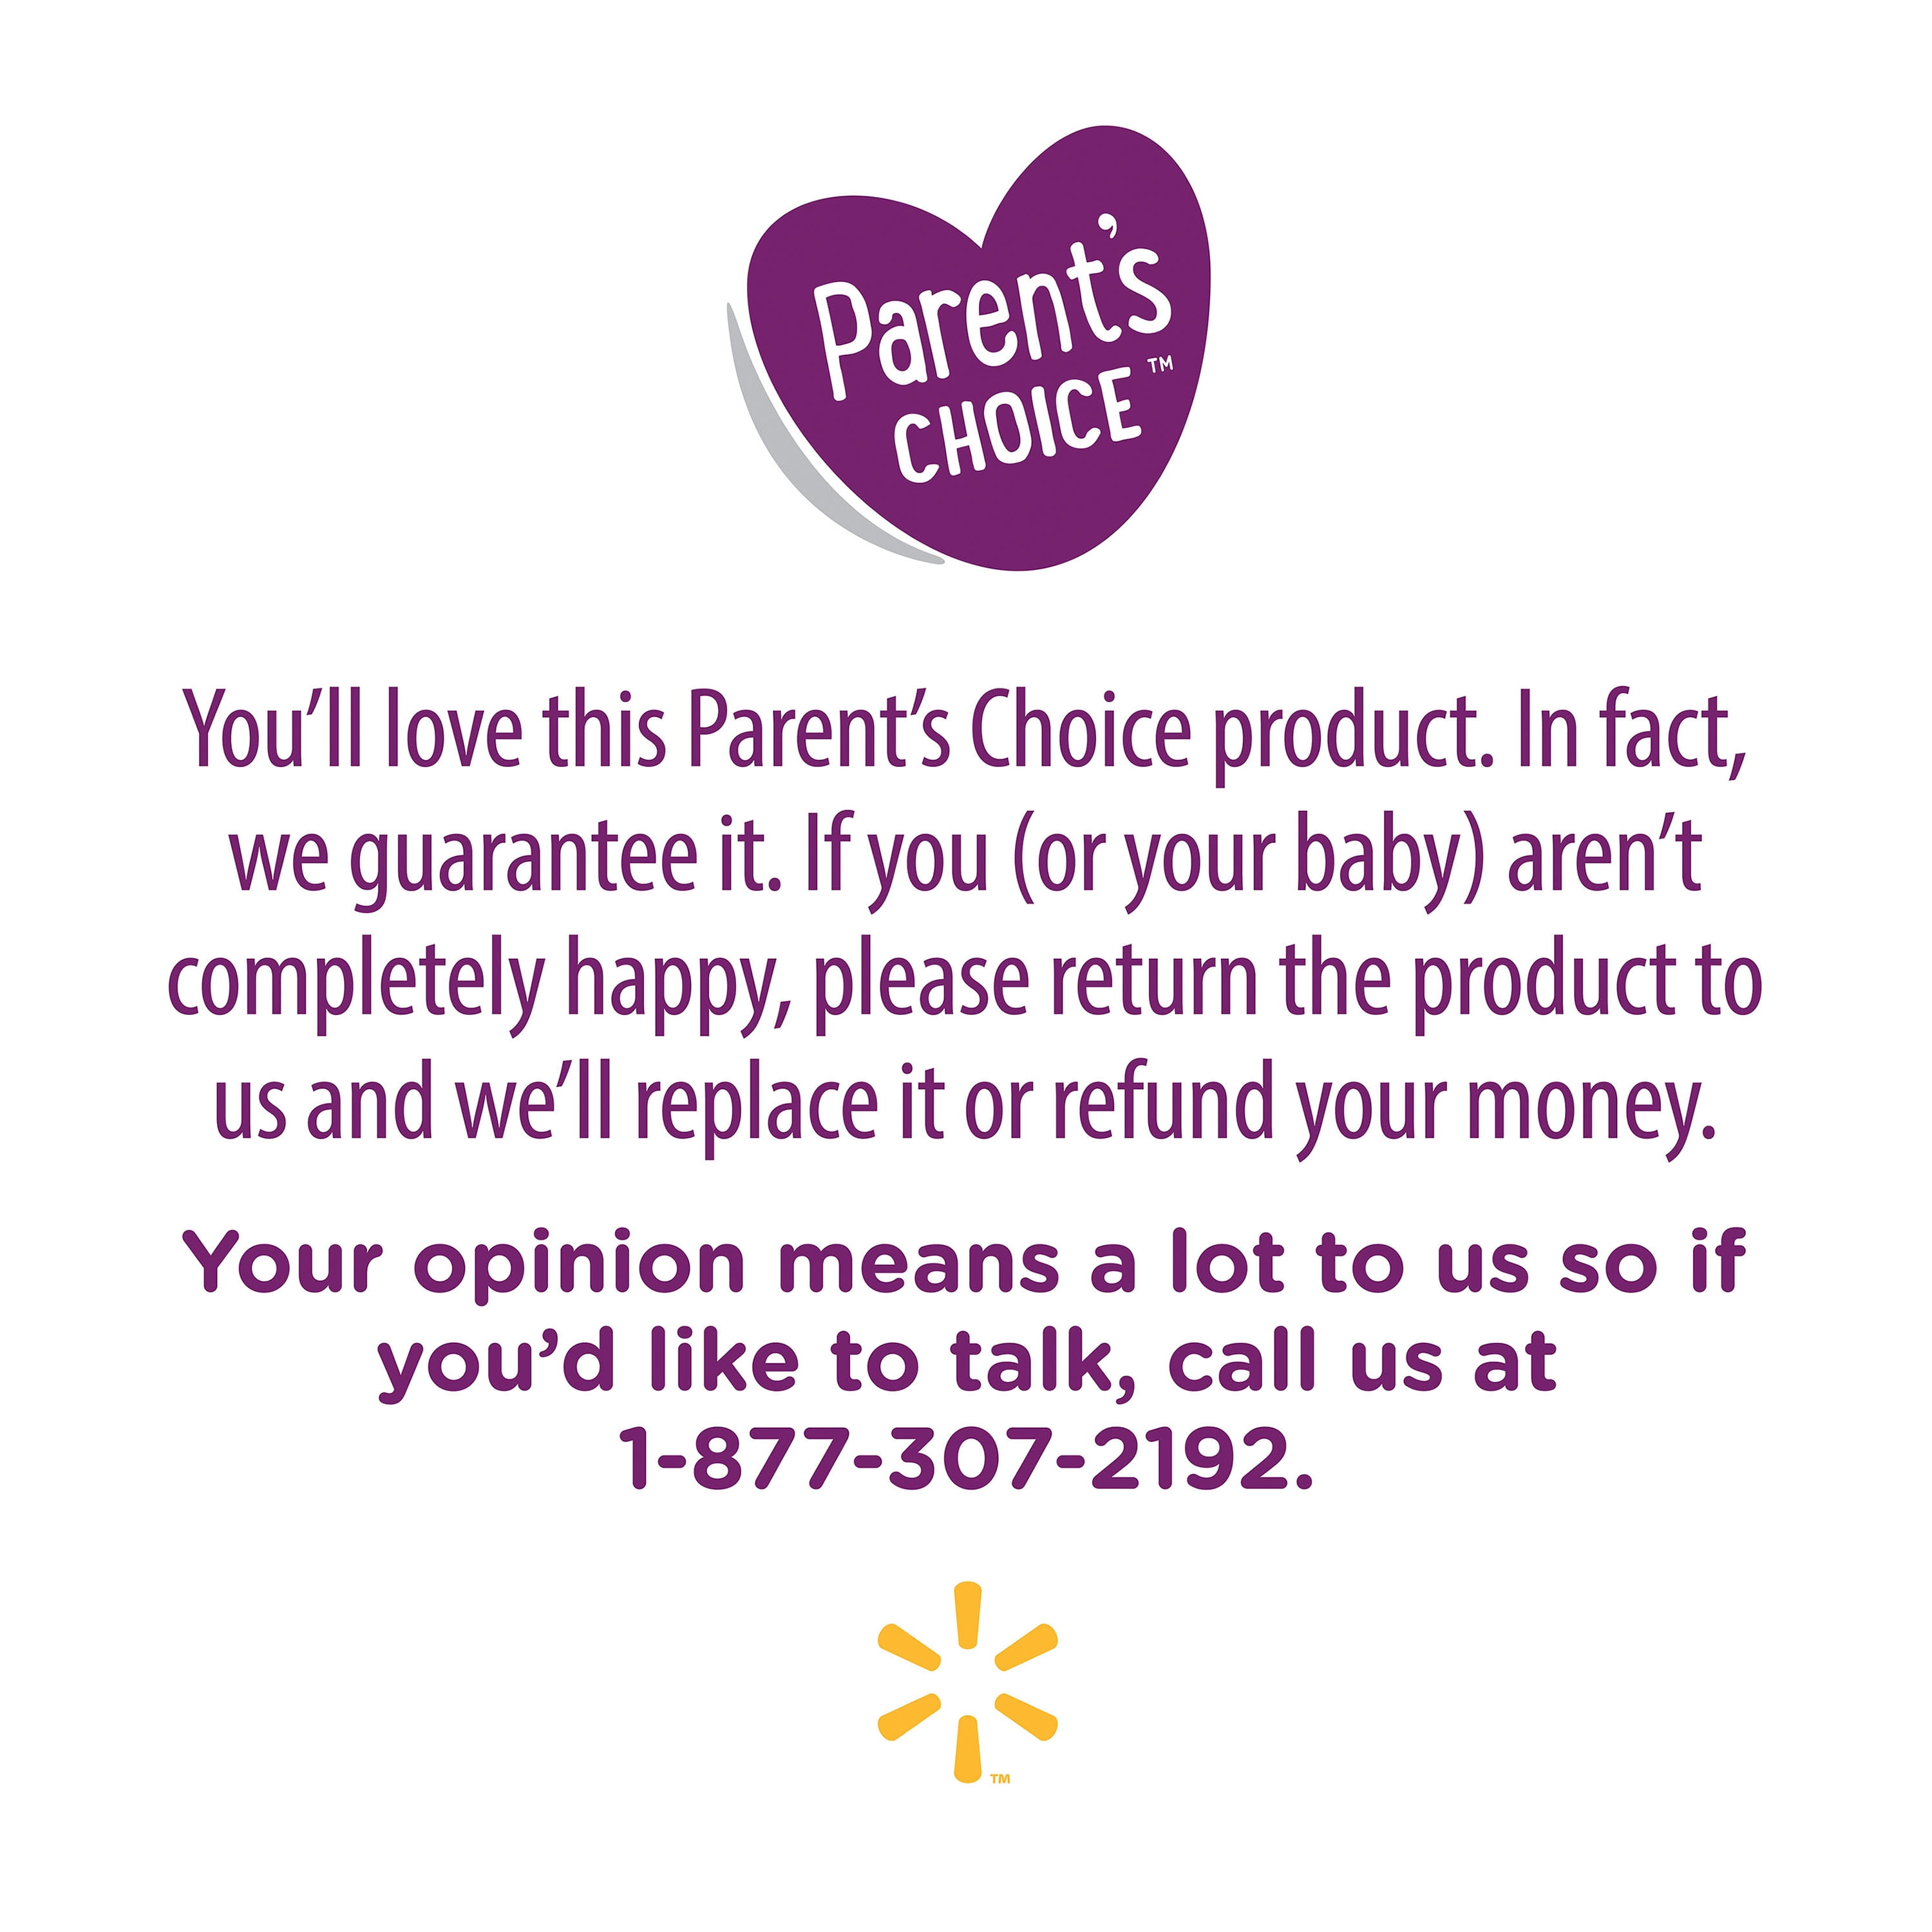 Parent's Choice Disposable Nursing Pads - 120 ct Reviews 2024